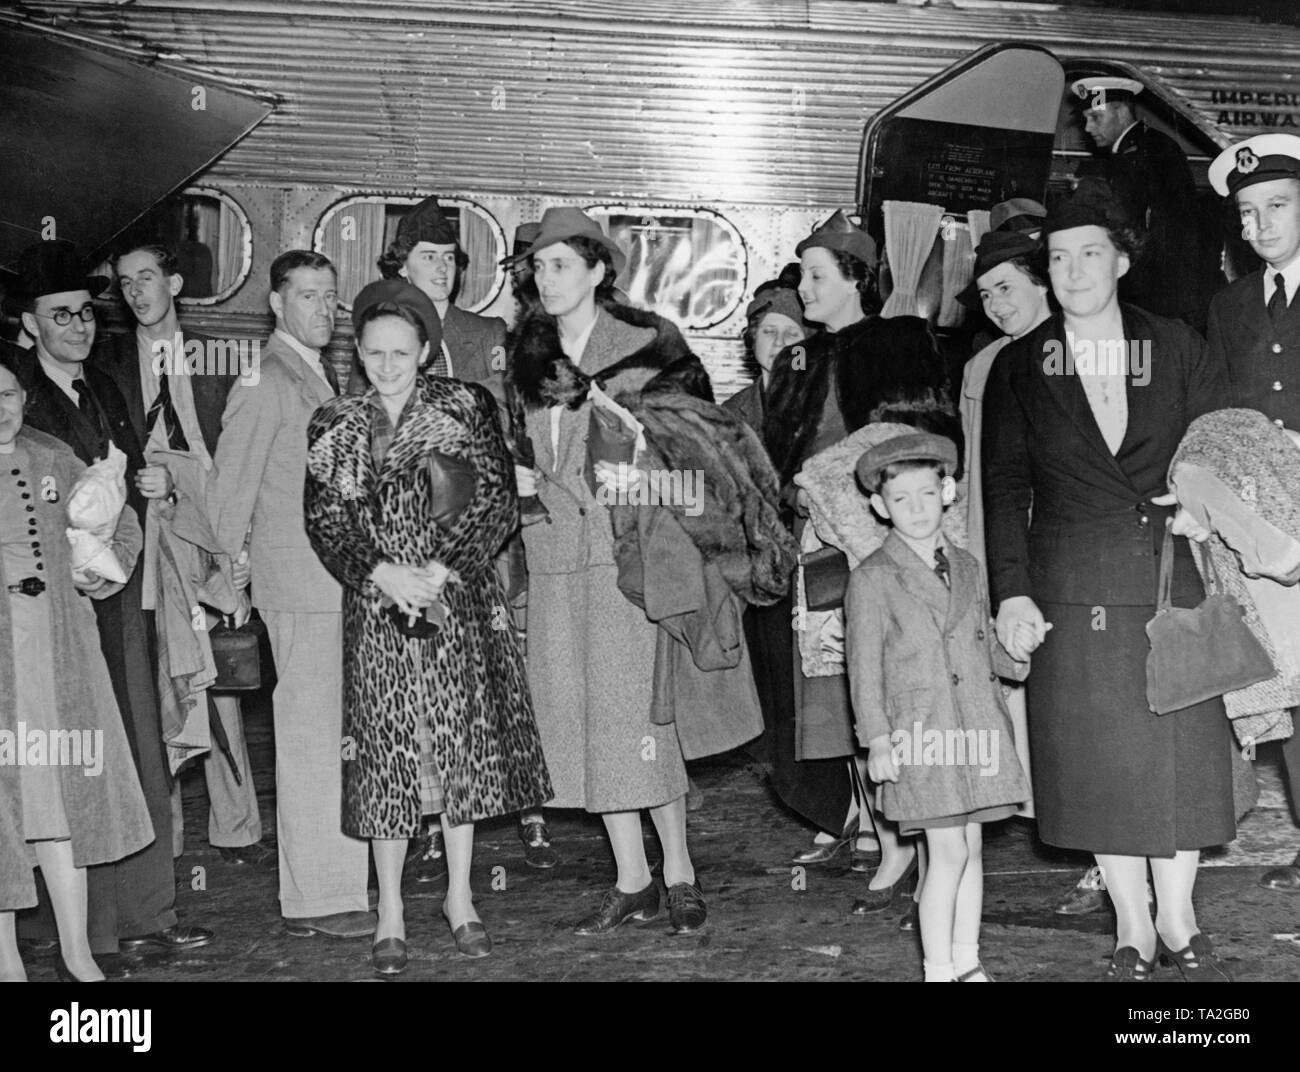 Die britische Regierung räumt britische Familien aus Prag. Die Familien werden mit einem Flugzeug des Imperial Airways geflogen namens "Herakles". Nach dem Münchener Abkommen im Oktober 1938, in der Tschechoslowakei hatten die Sudetendeutschen Gebiete an das Deutsche Reich abtreten. Stockfoto